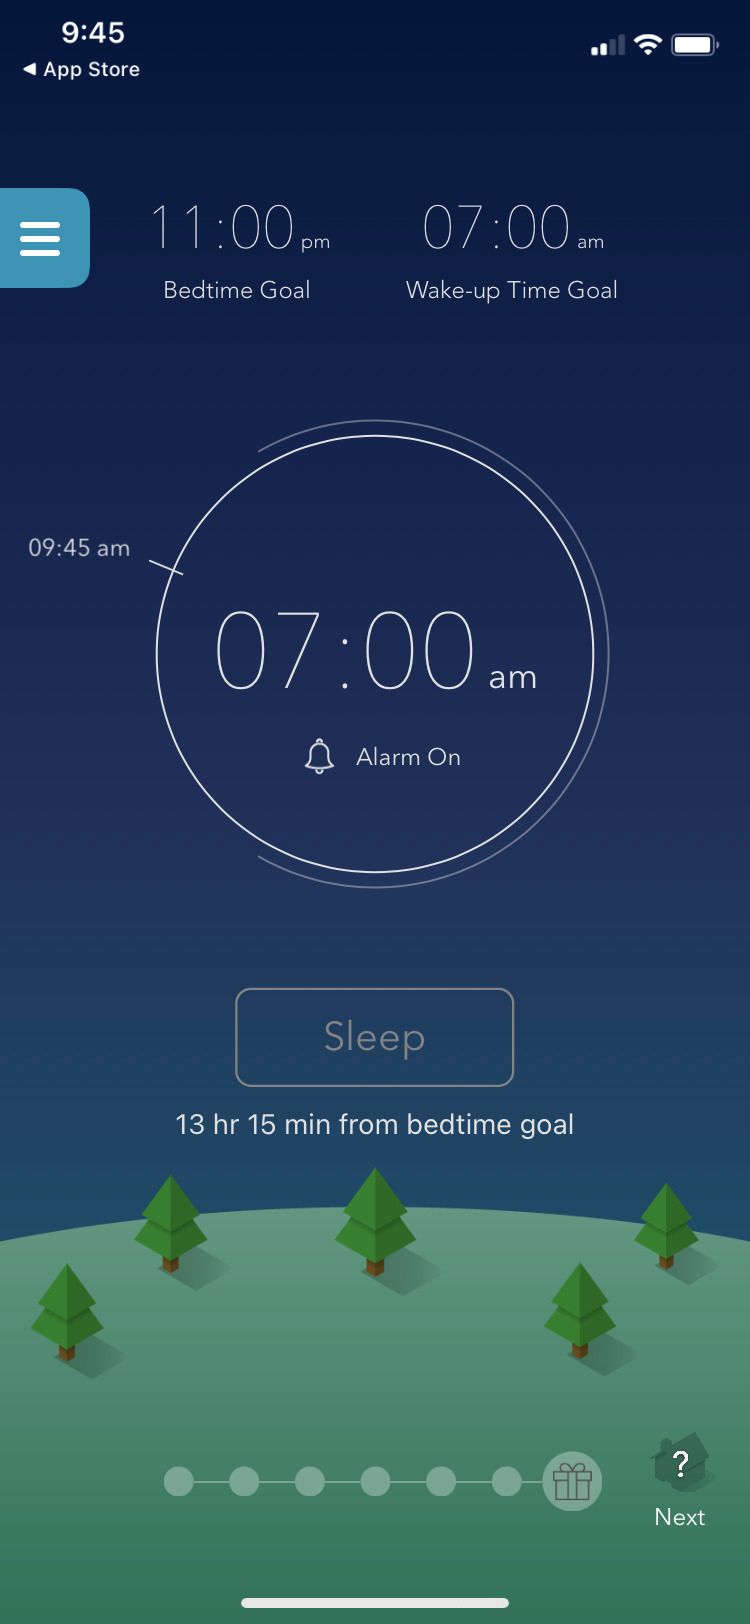 Sleeptown app home screen